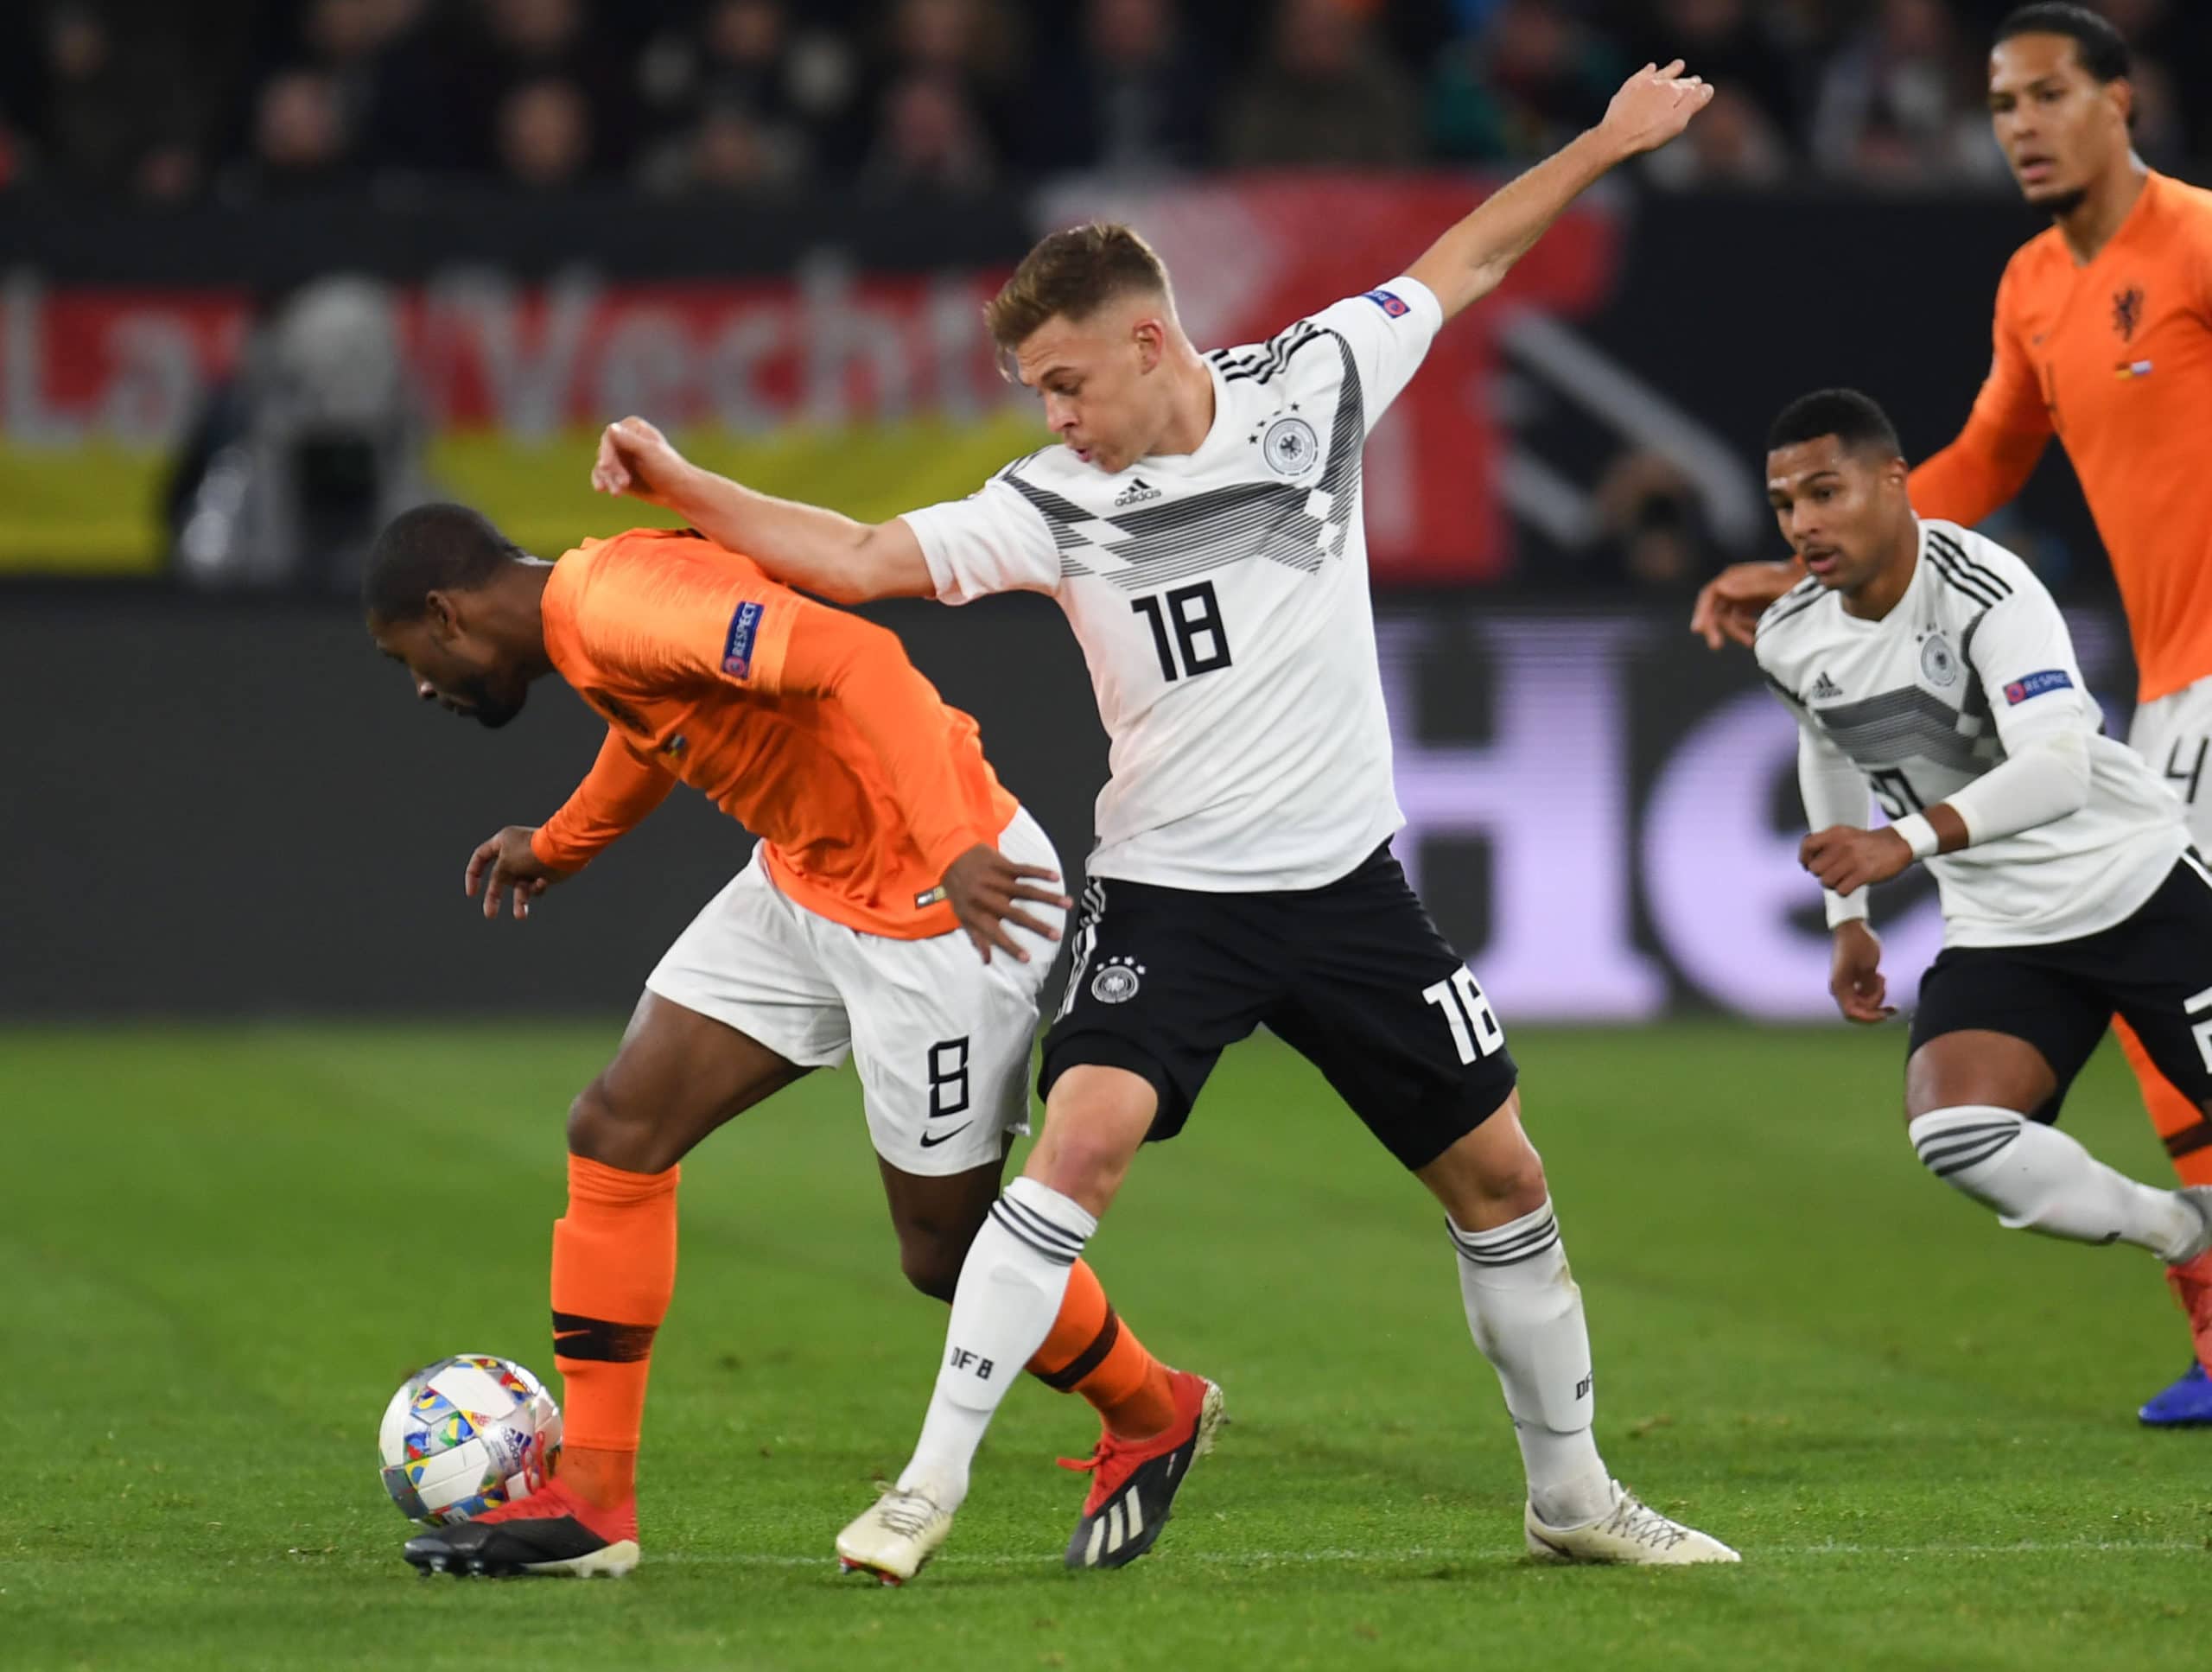 Fußball Länderspiel heute ** 1:1 Deutschland gegen Niederlande * Fakten, Bilanz & TV-Übertragung